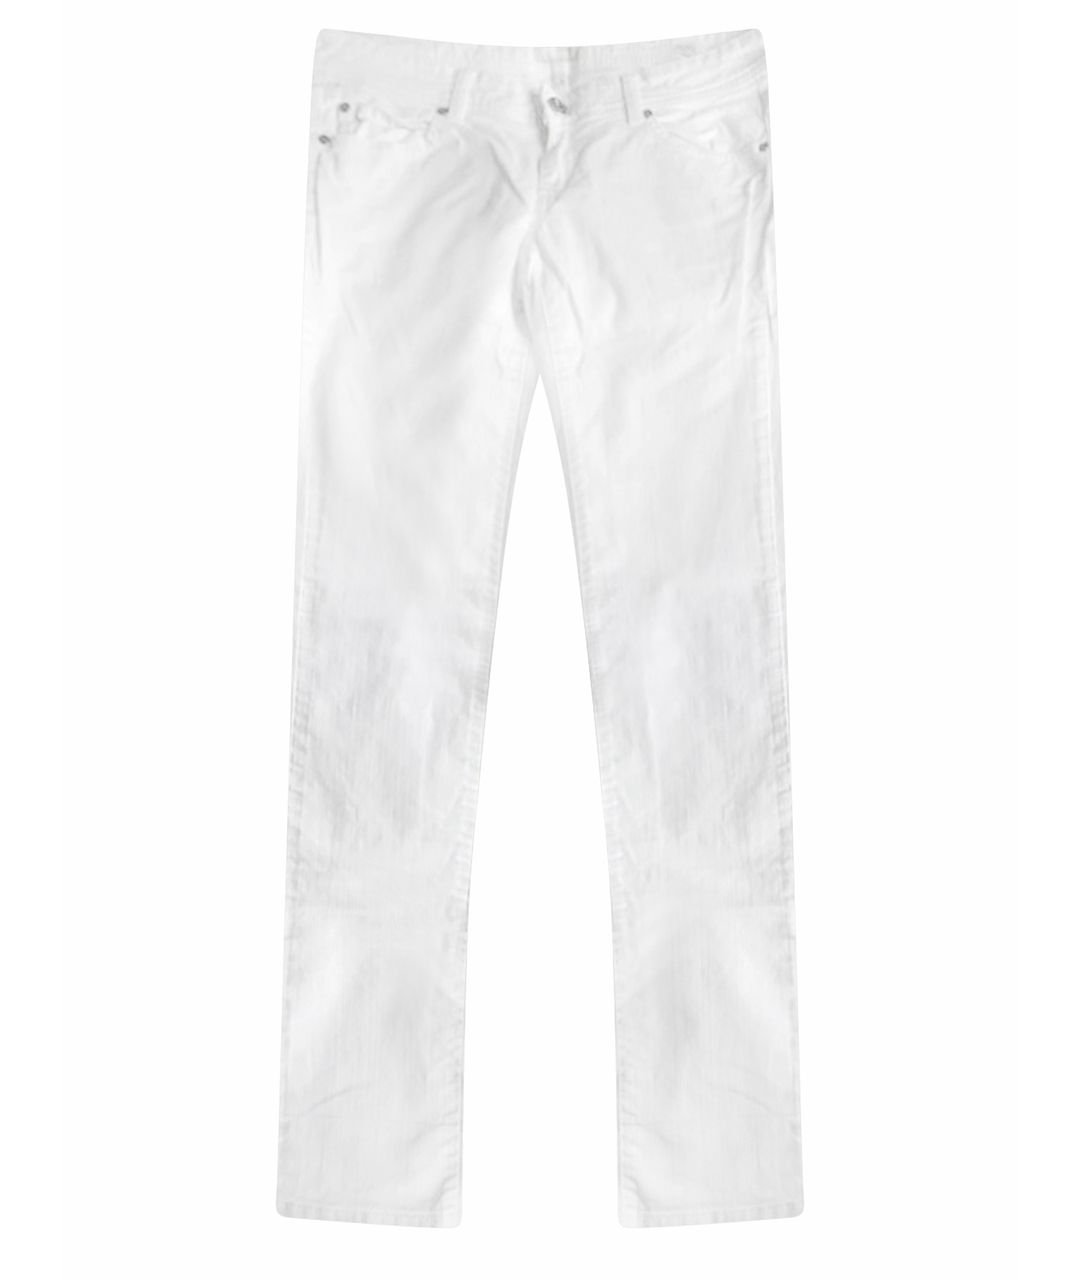 CERRUTI 1881 Белые хлопковые прямые джинсы, фото 1